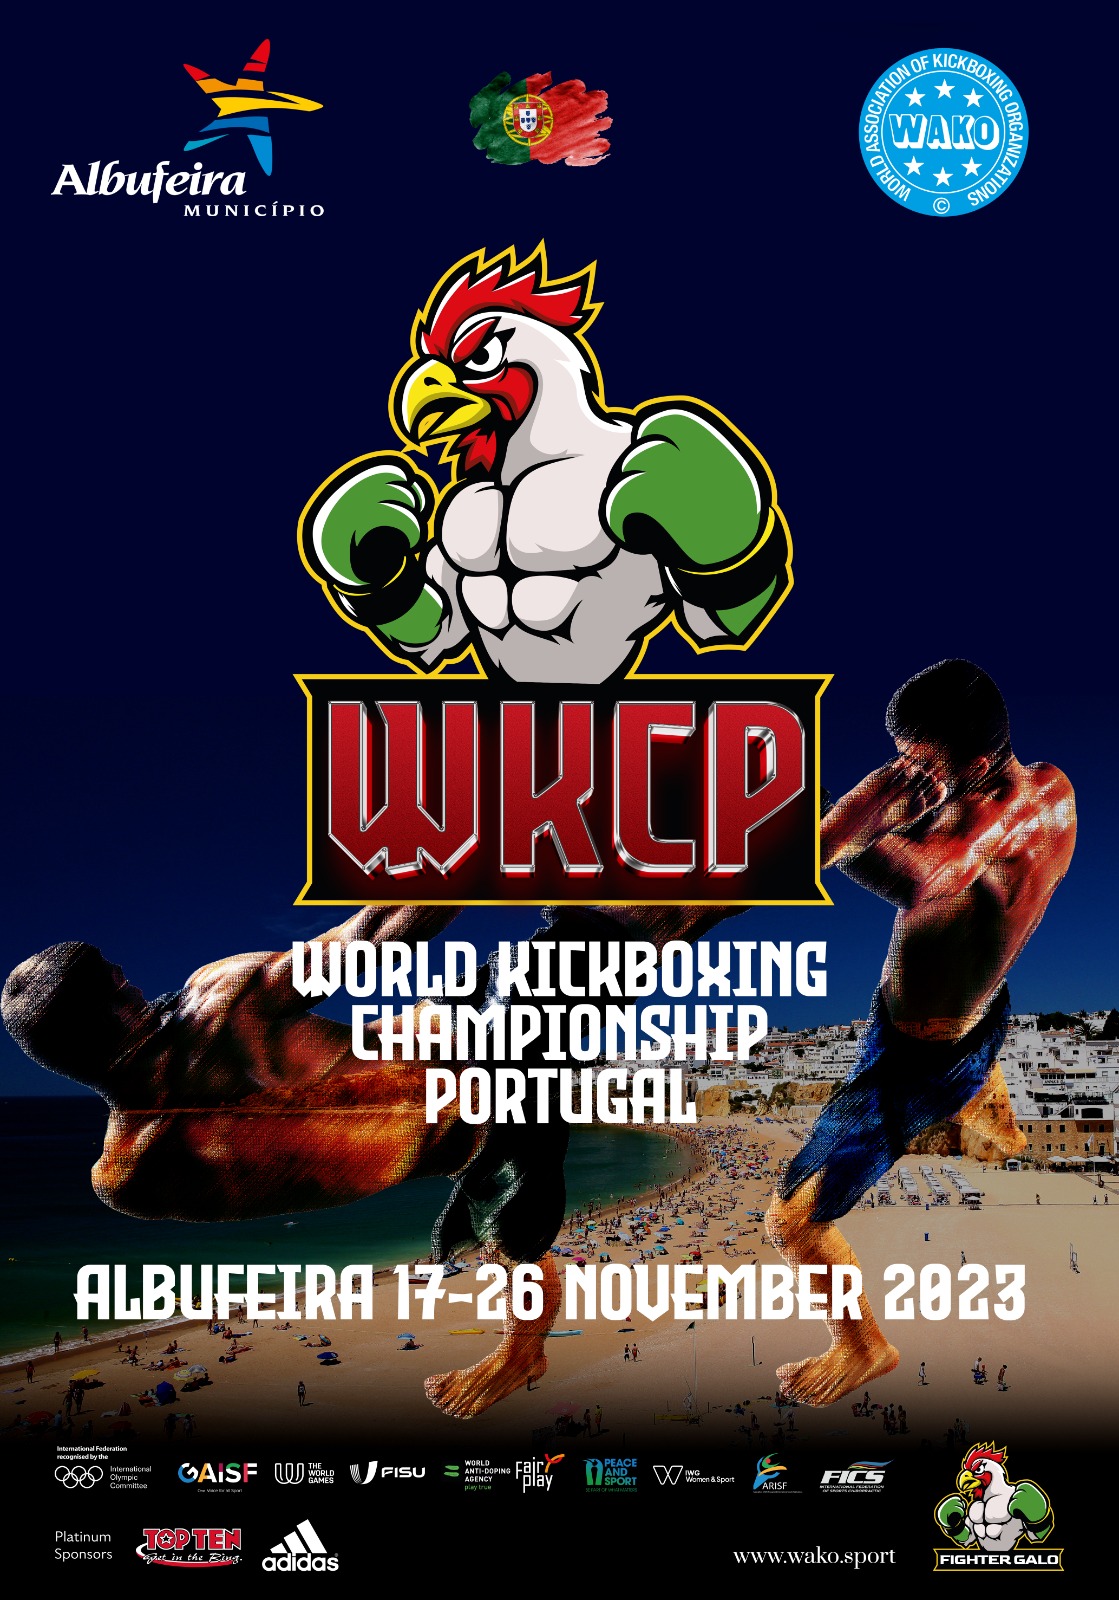 Wako - World Association of Kickboxing Organizations